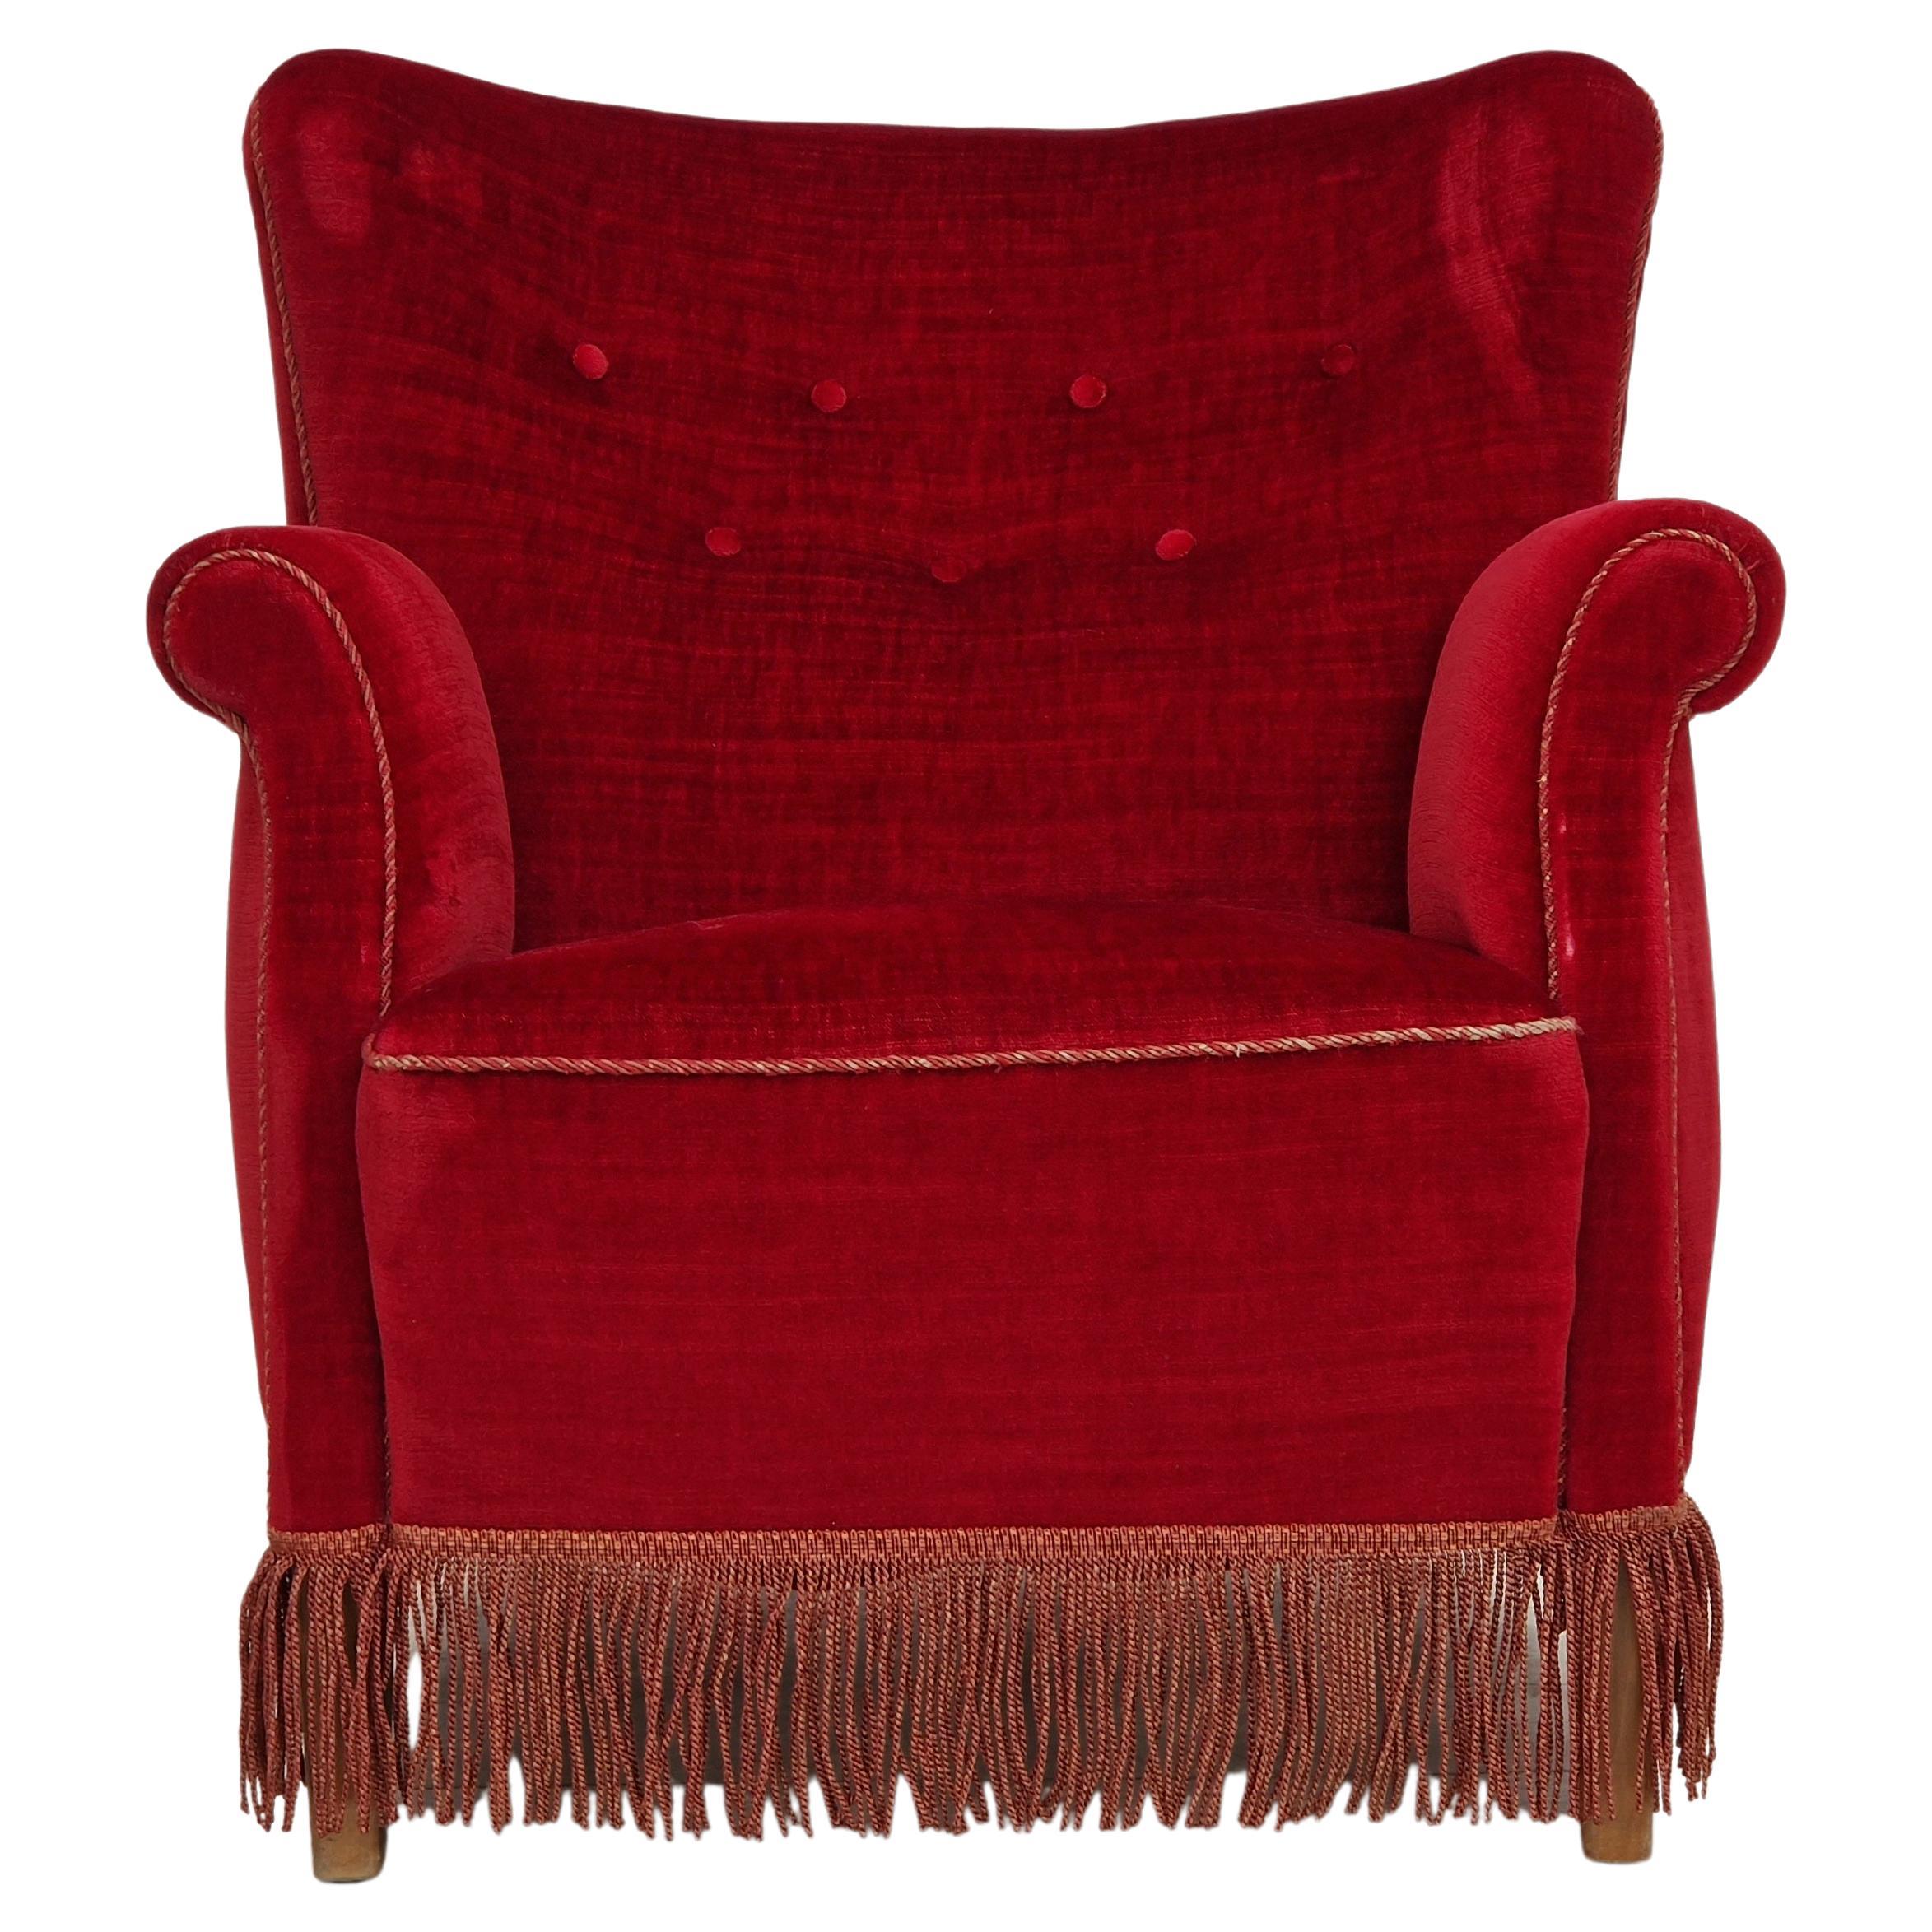 1960s, Danish Vintage Armchair in Cherry-Red Velvet For Sale